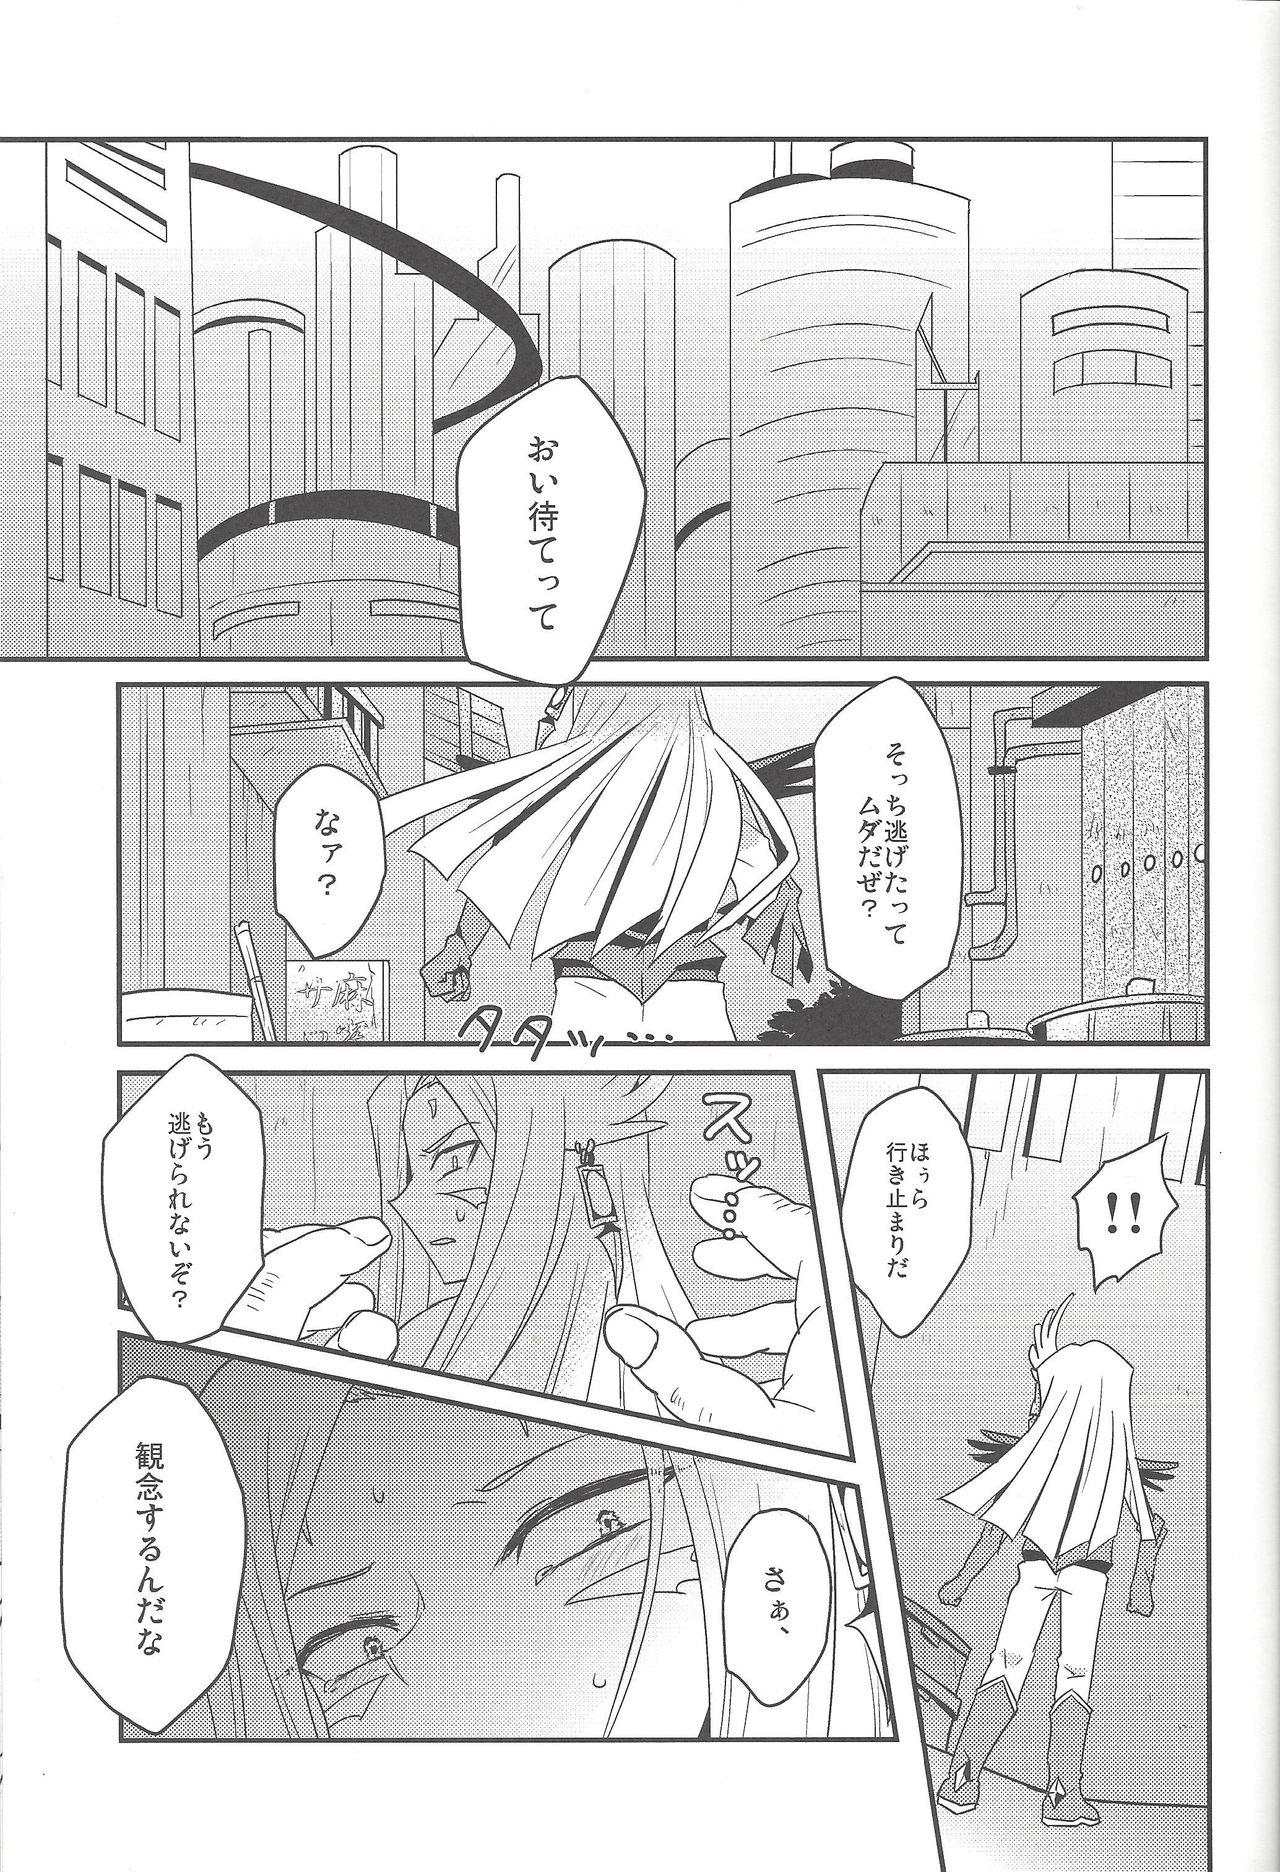 Rimming Karasete Moraou! Kisama no Shojo o! - Yu-gi-oh zexal Spread - Page 4